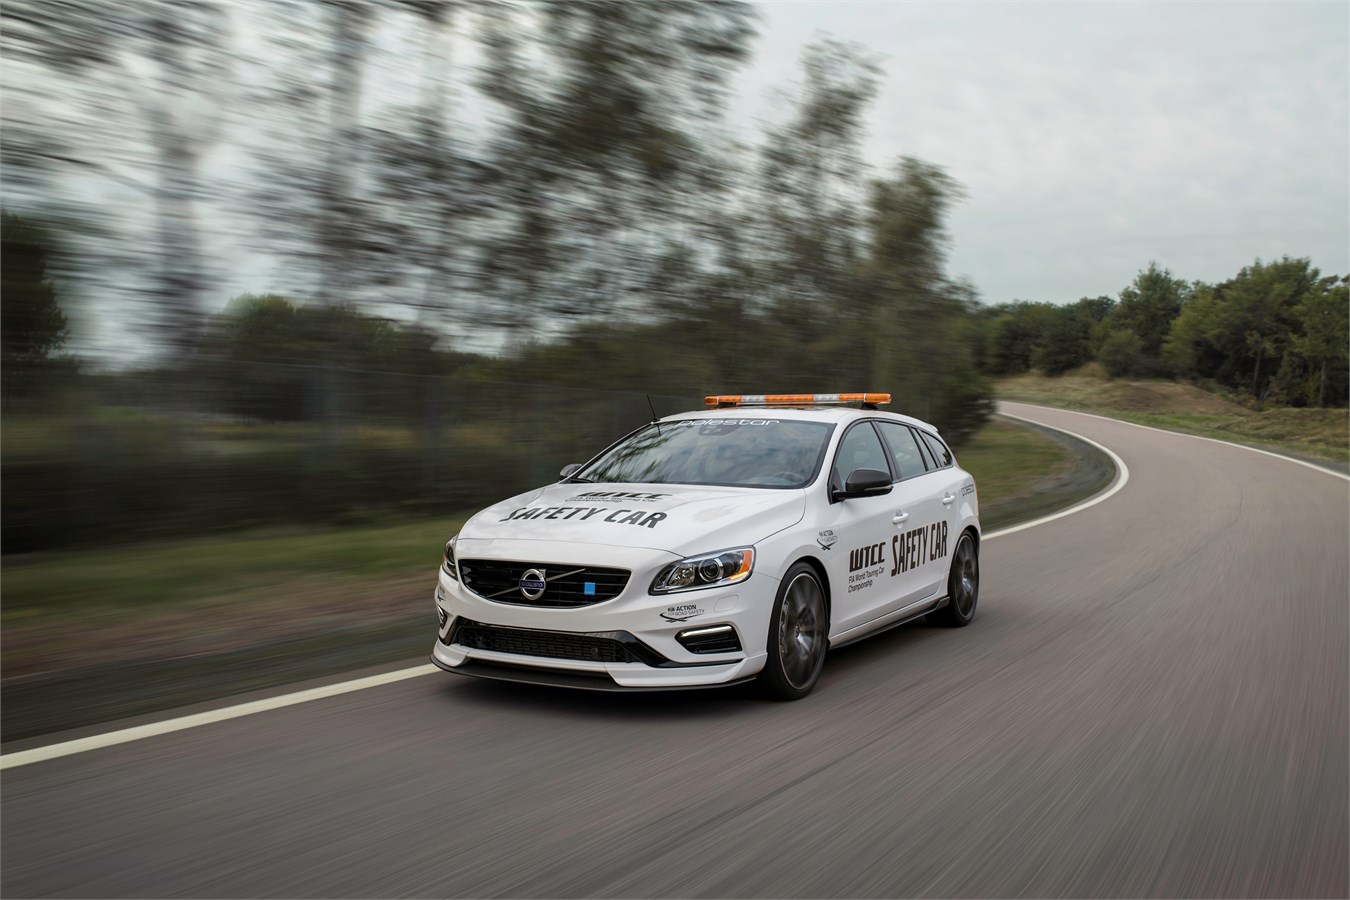 Världens säkraste Safety Car blir snabbare med nya Volvo V60 Polestar WTCC Safety Car